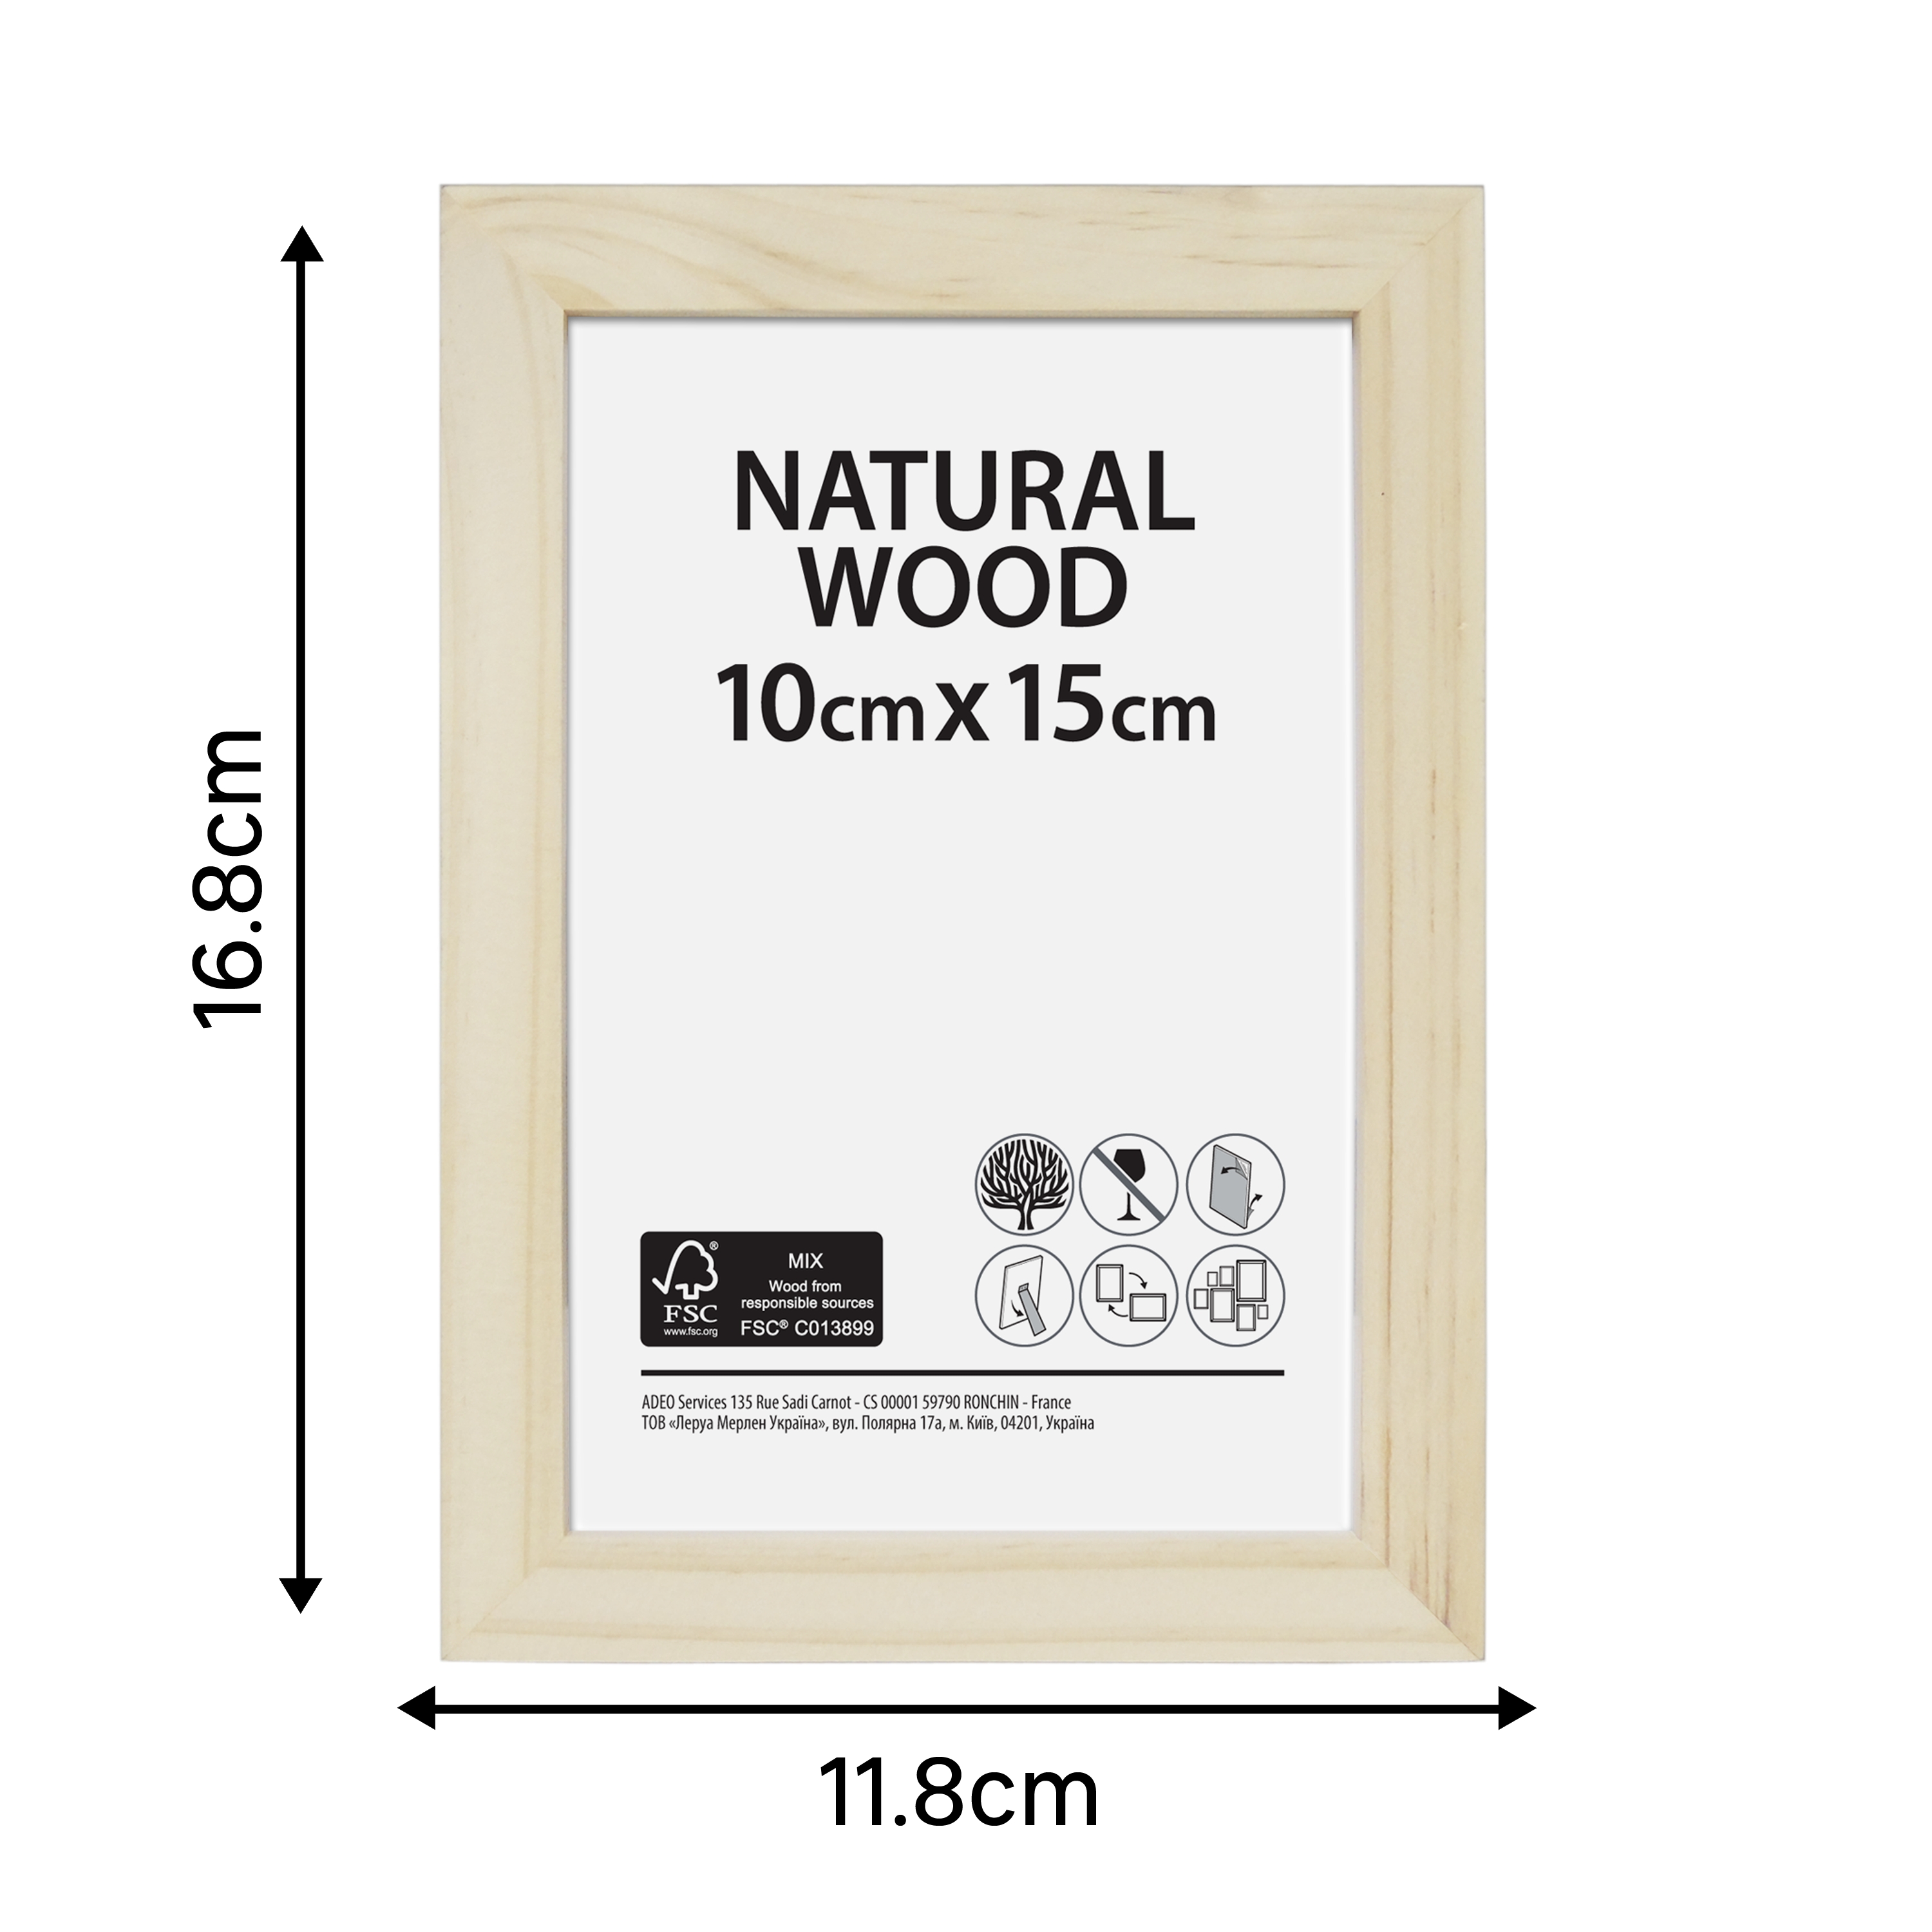 Cornice Natural wood naturale per foto da 10x15 cm - 11